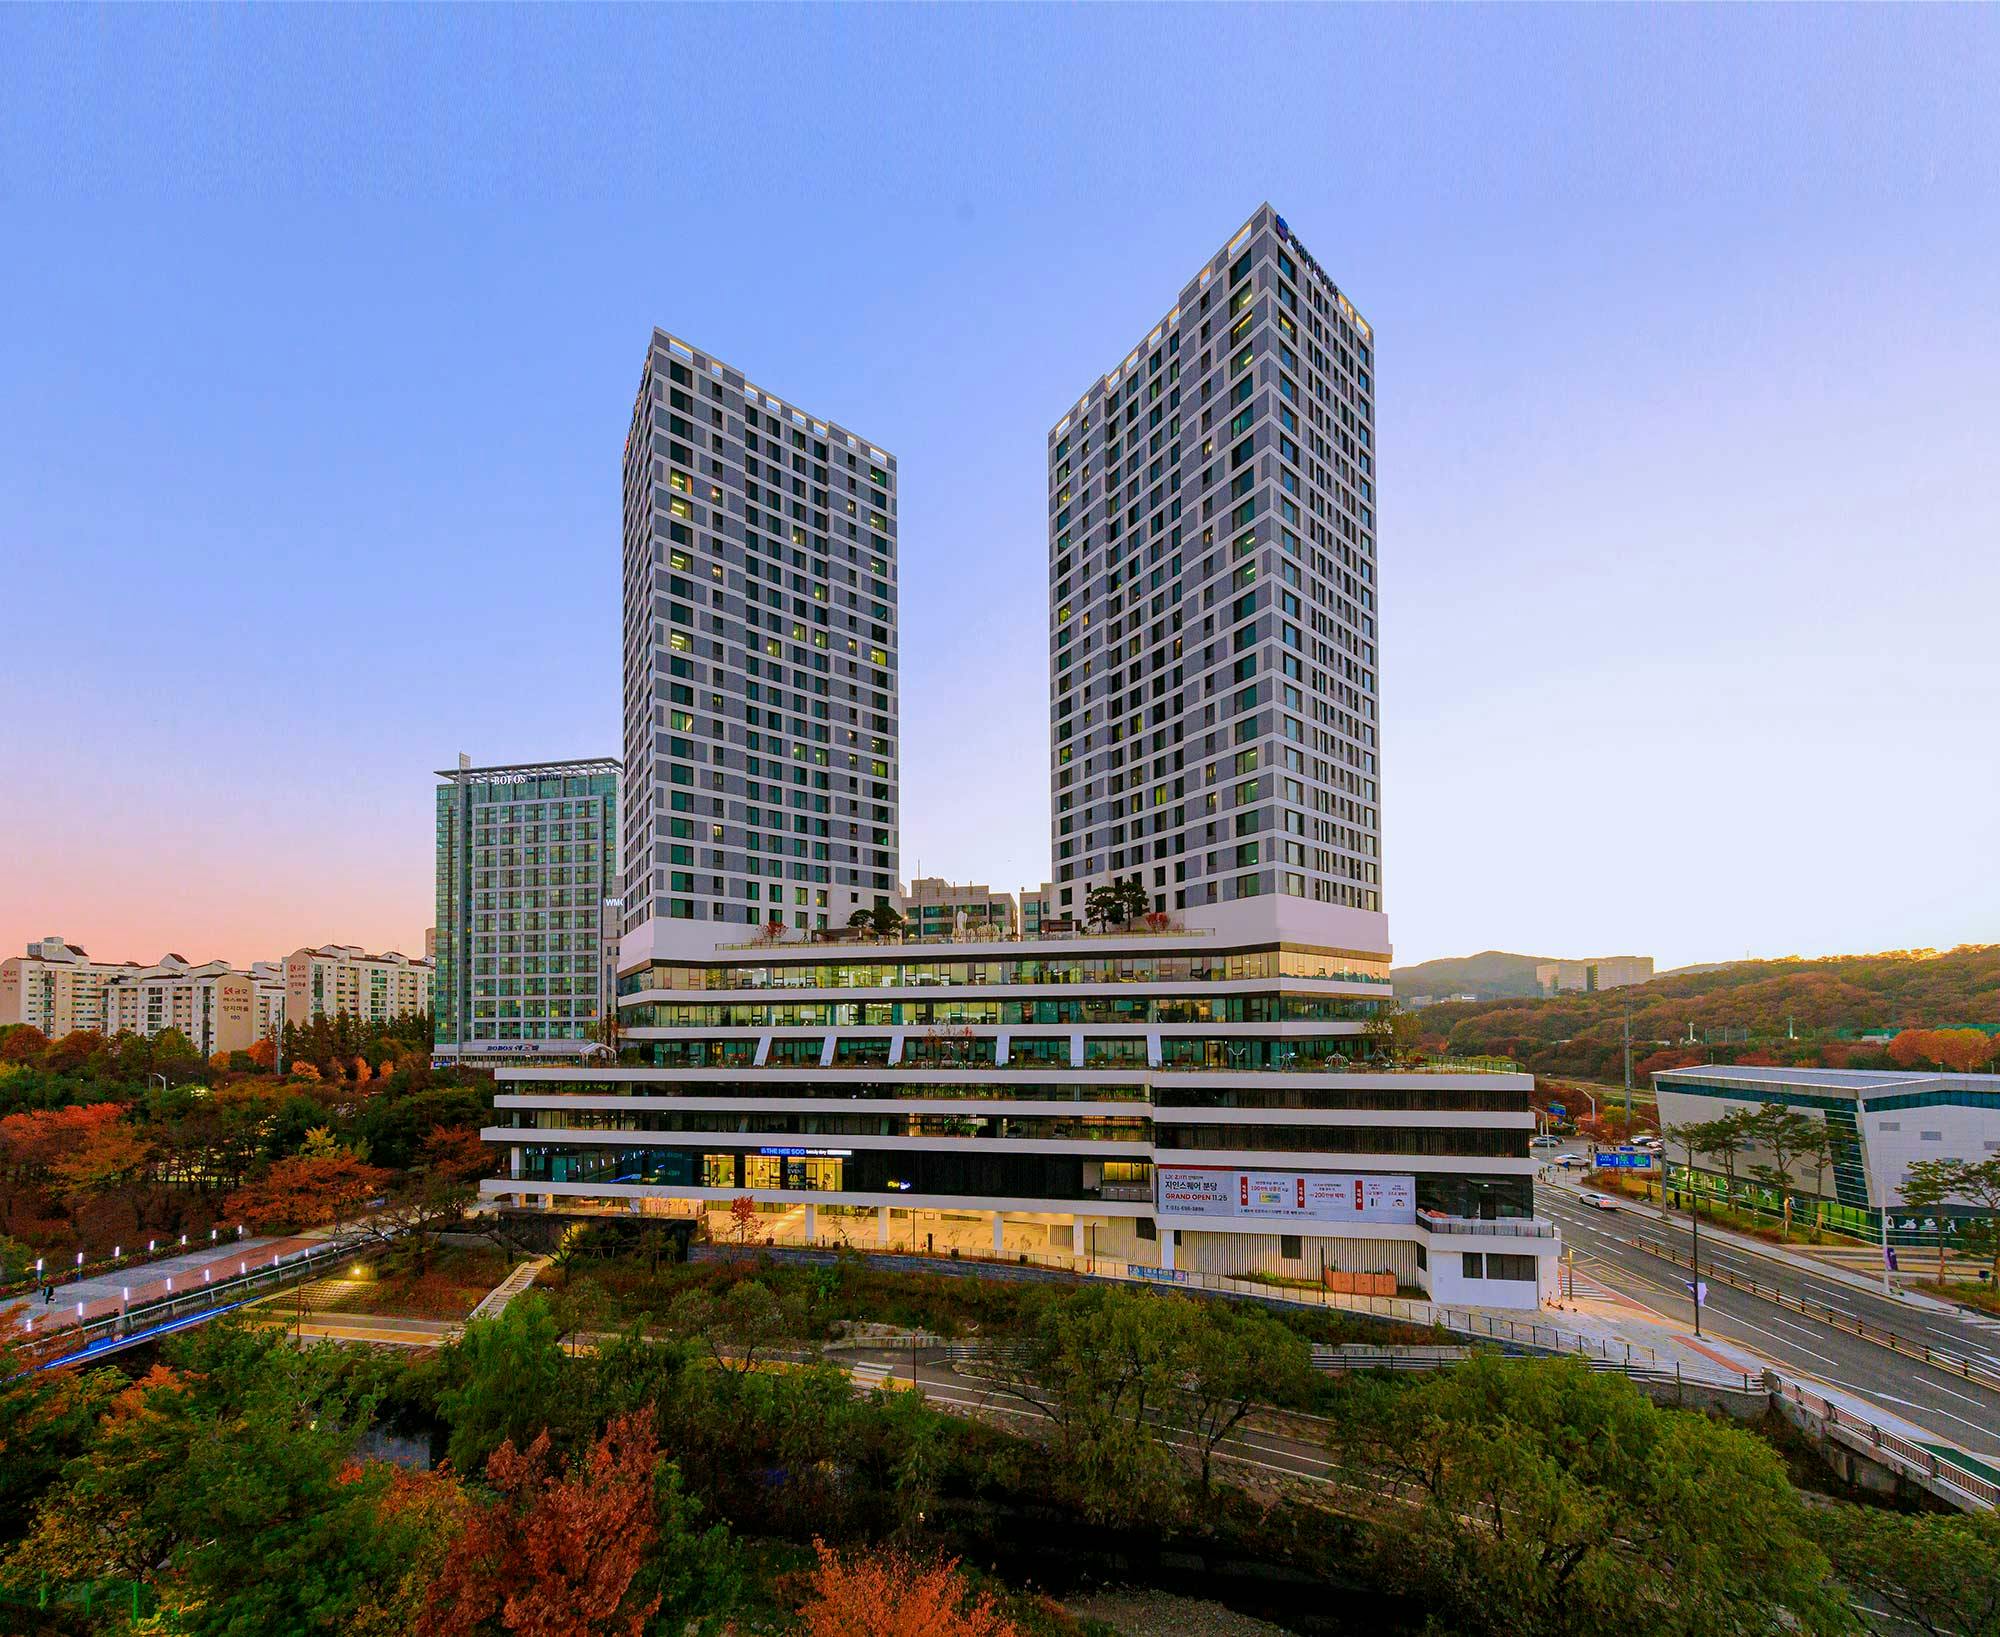 Bildnummer 32 des aktuellen Abschnitts von Korea: Ode to contemporary architecture amidst Sakura blossoms thanks to Dekton von Cosentino Deutschland